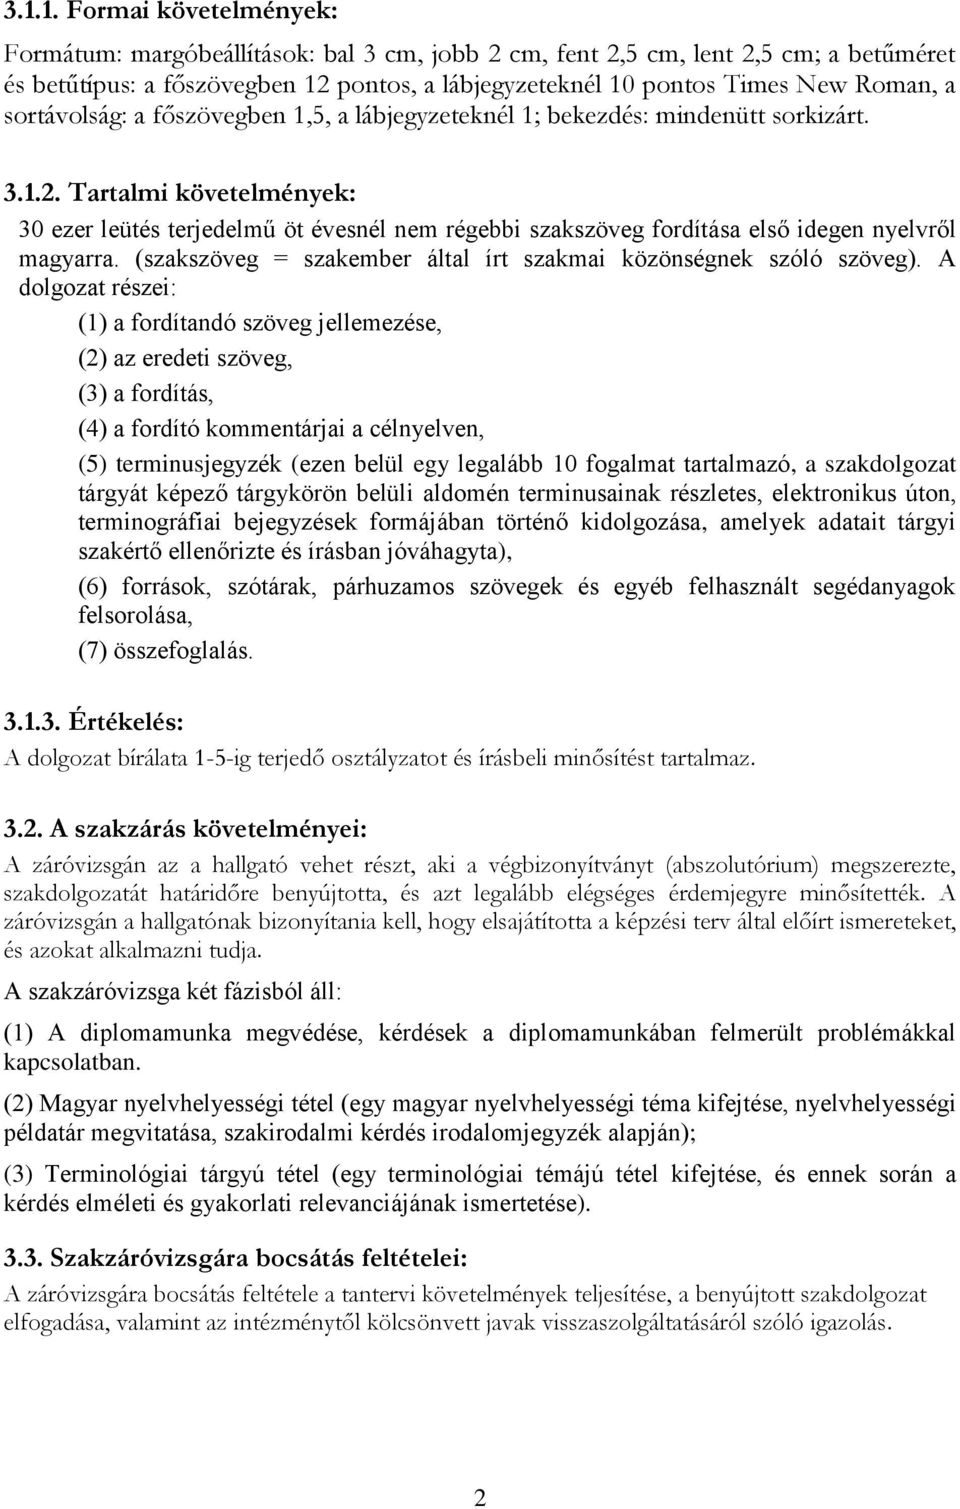 Tartalmi követelmények: 30 ezer leütés terjedelmű öt évesnél nem régebbi szakszöveg fordítása első idegen nyelvről magyarra. (szakszöveg = szakember által írt szakmai közönségnek szóló szöveg).